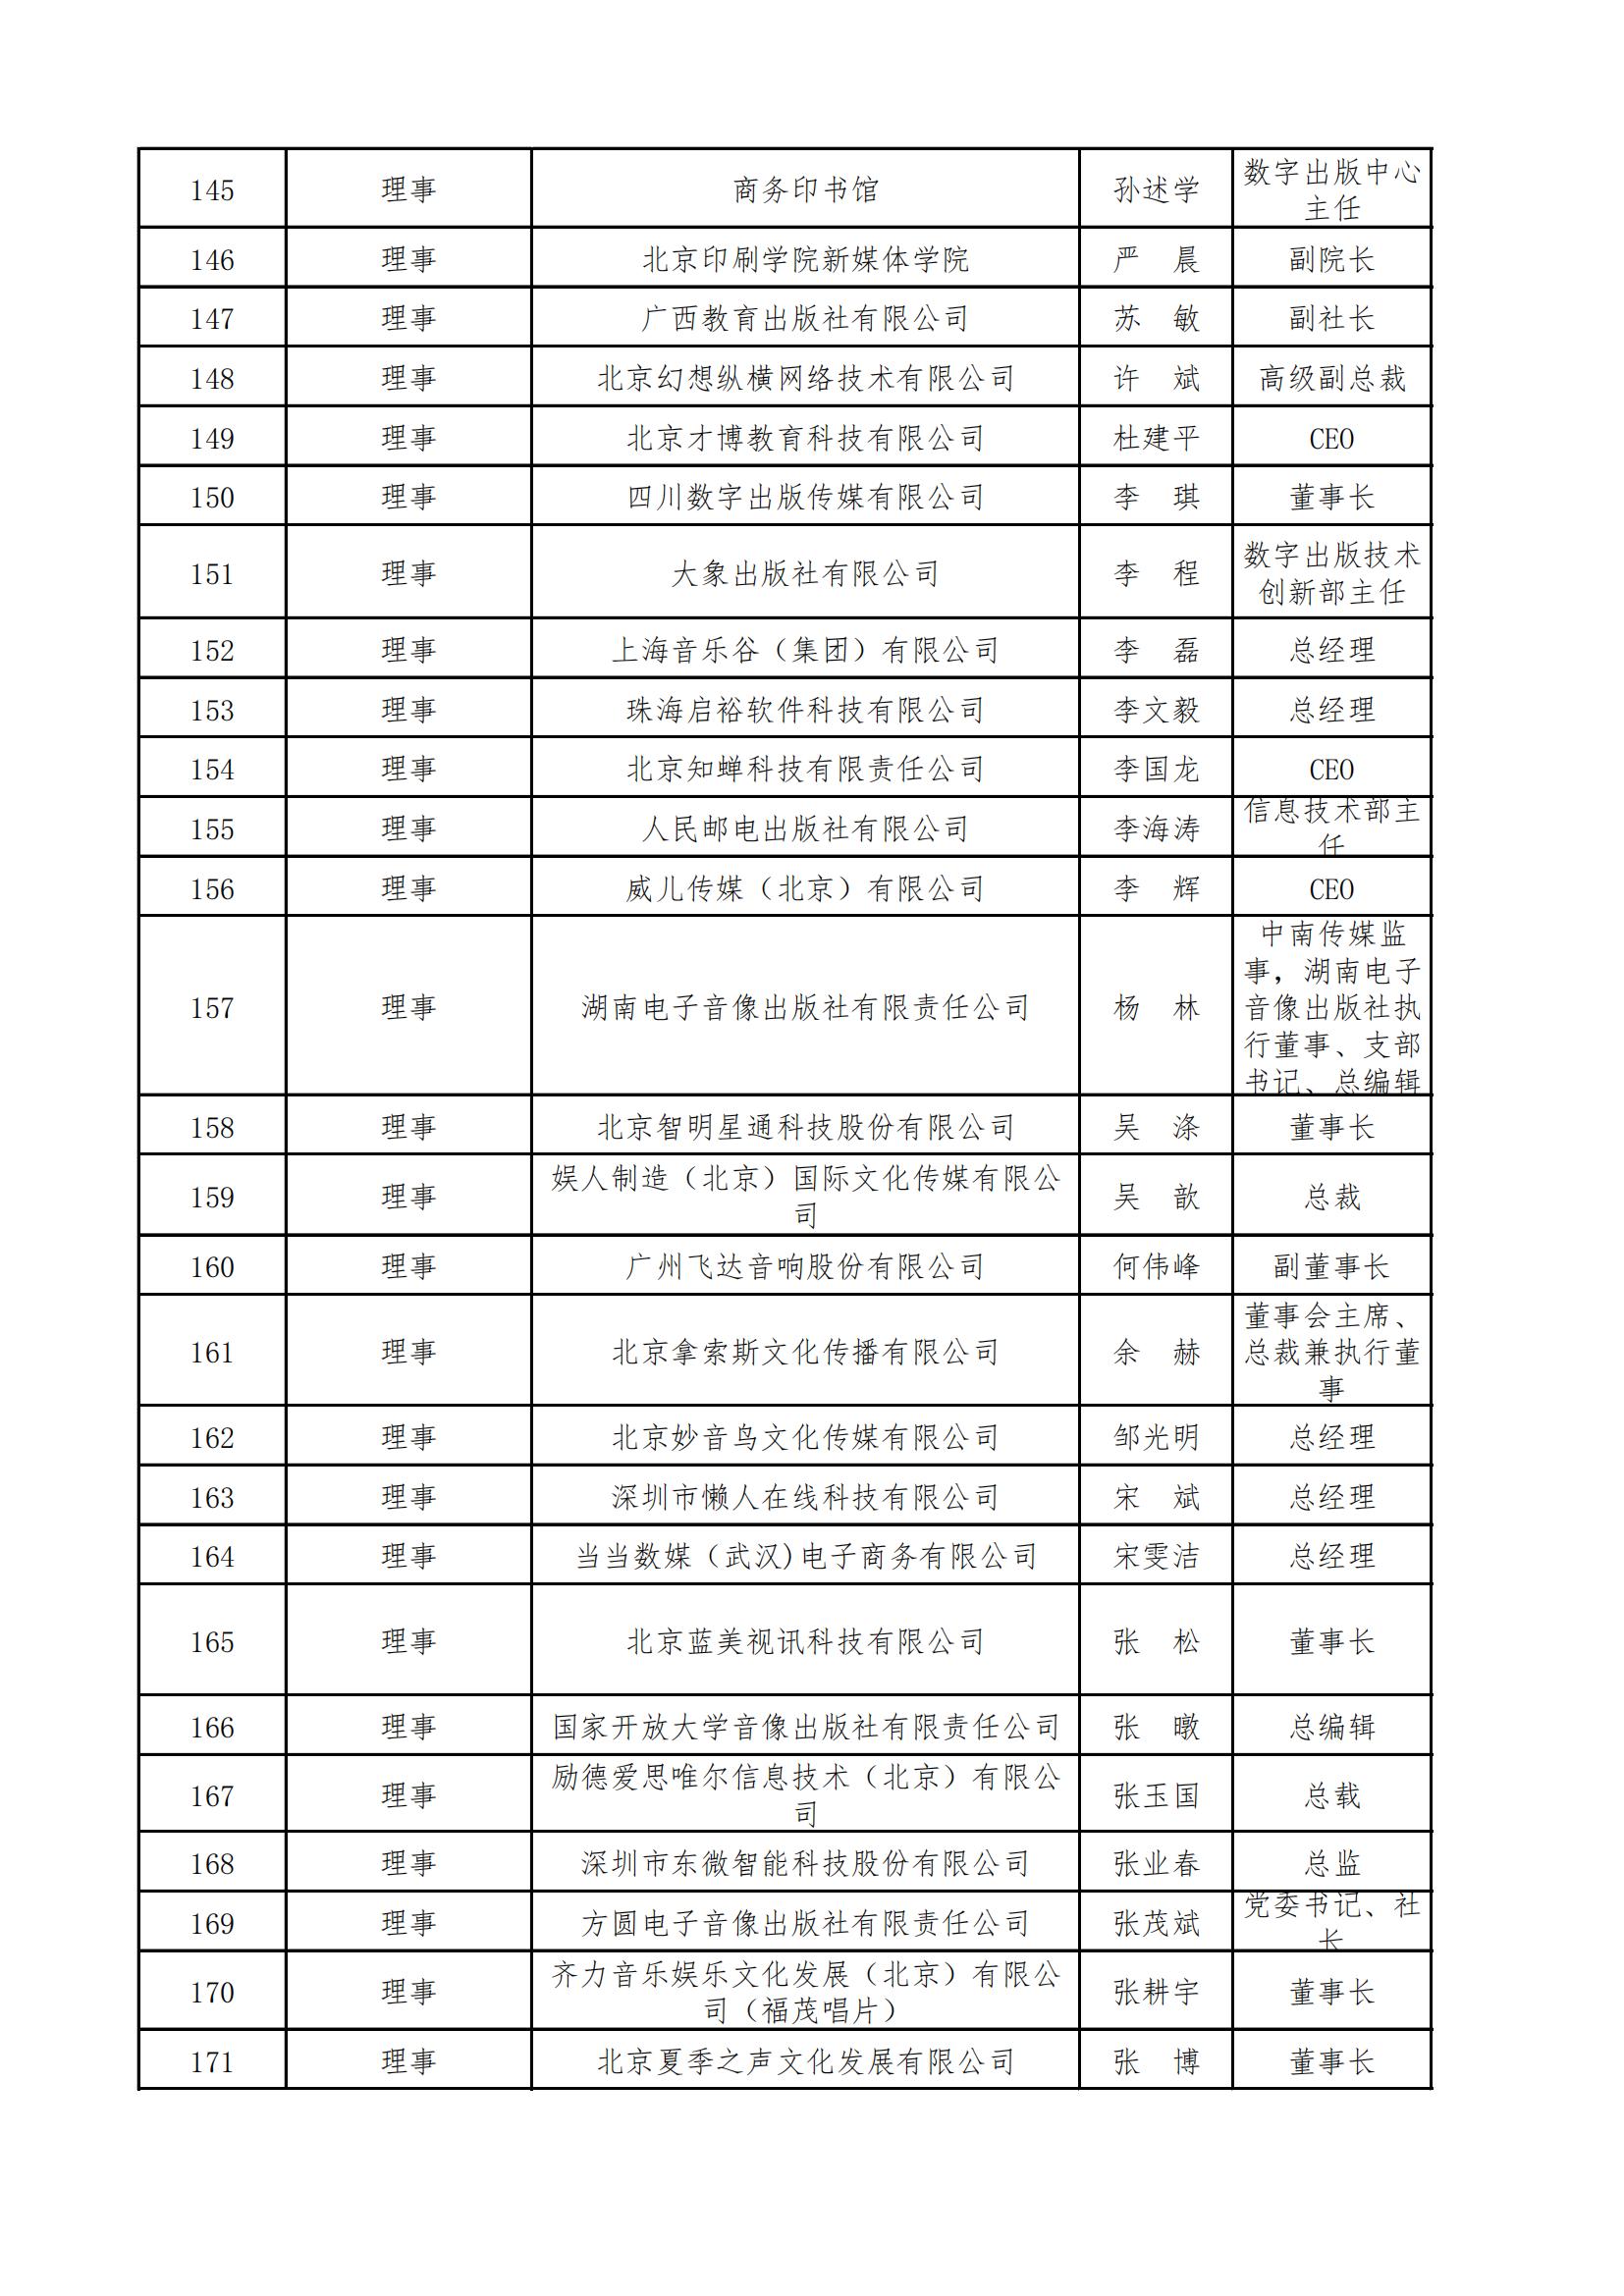 中國音像與數字出版協會第五屆理事會名錄_05.jpg